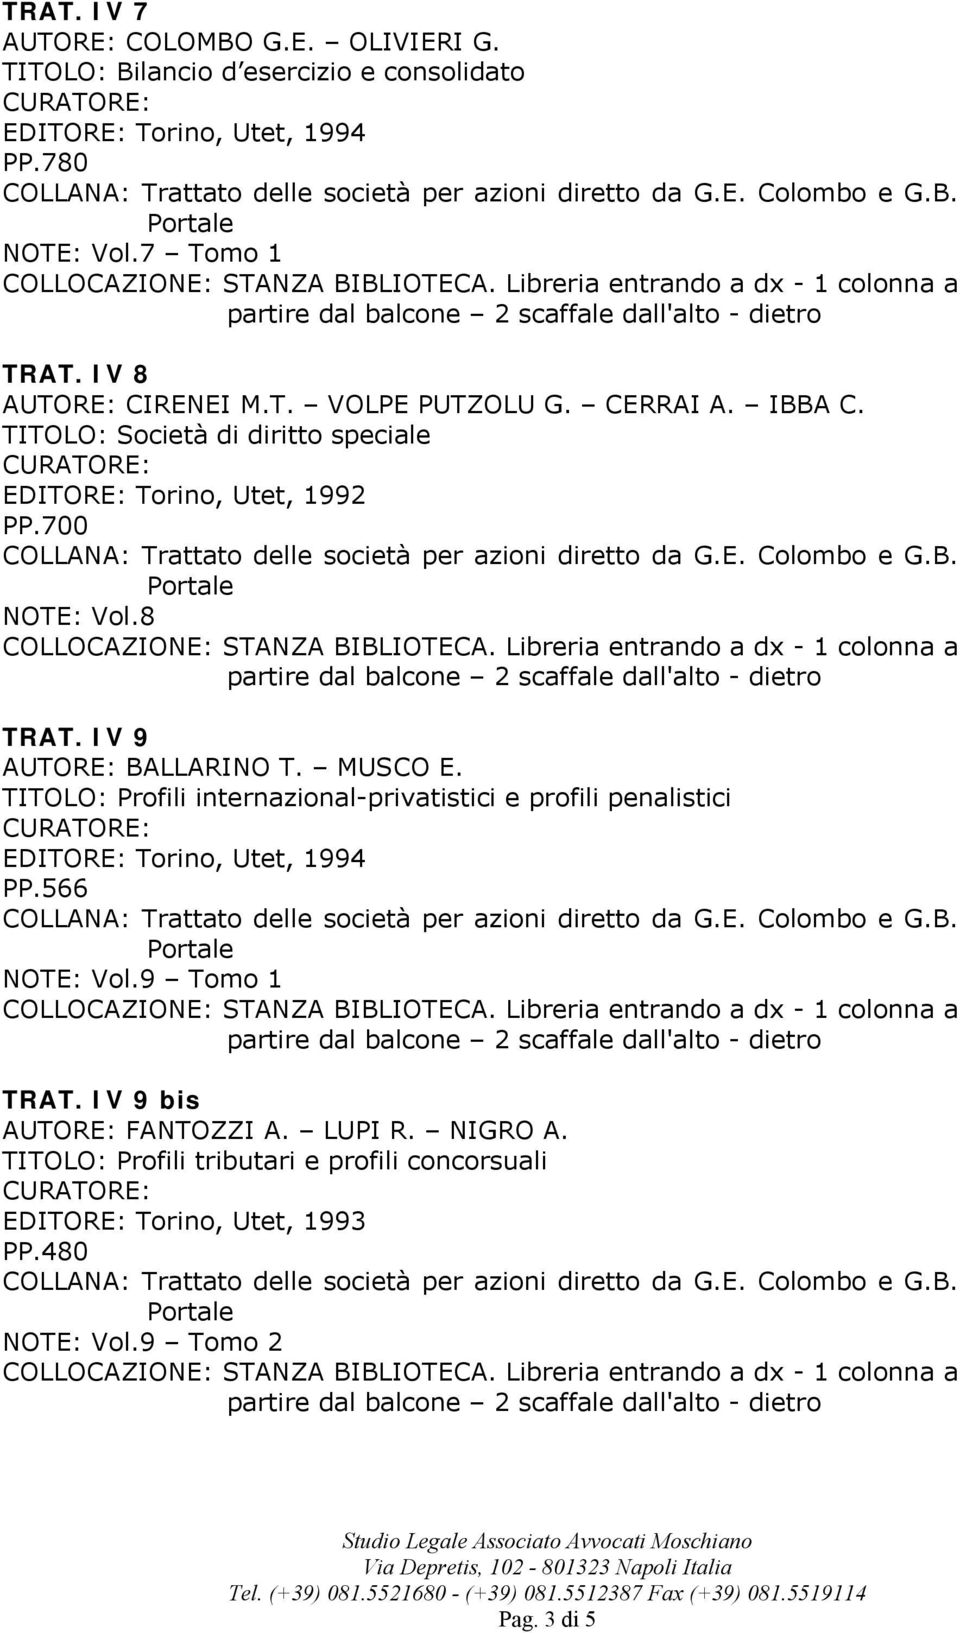 700 NOTE: Vol.8 TRAT. IV 9 BALLARINO T. MUSCO E. TITOLO: Profili internazional-privatistici e profili penalistici PP.